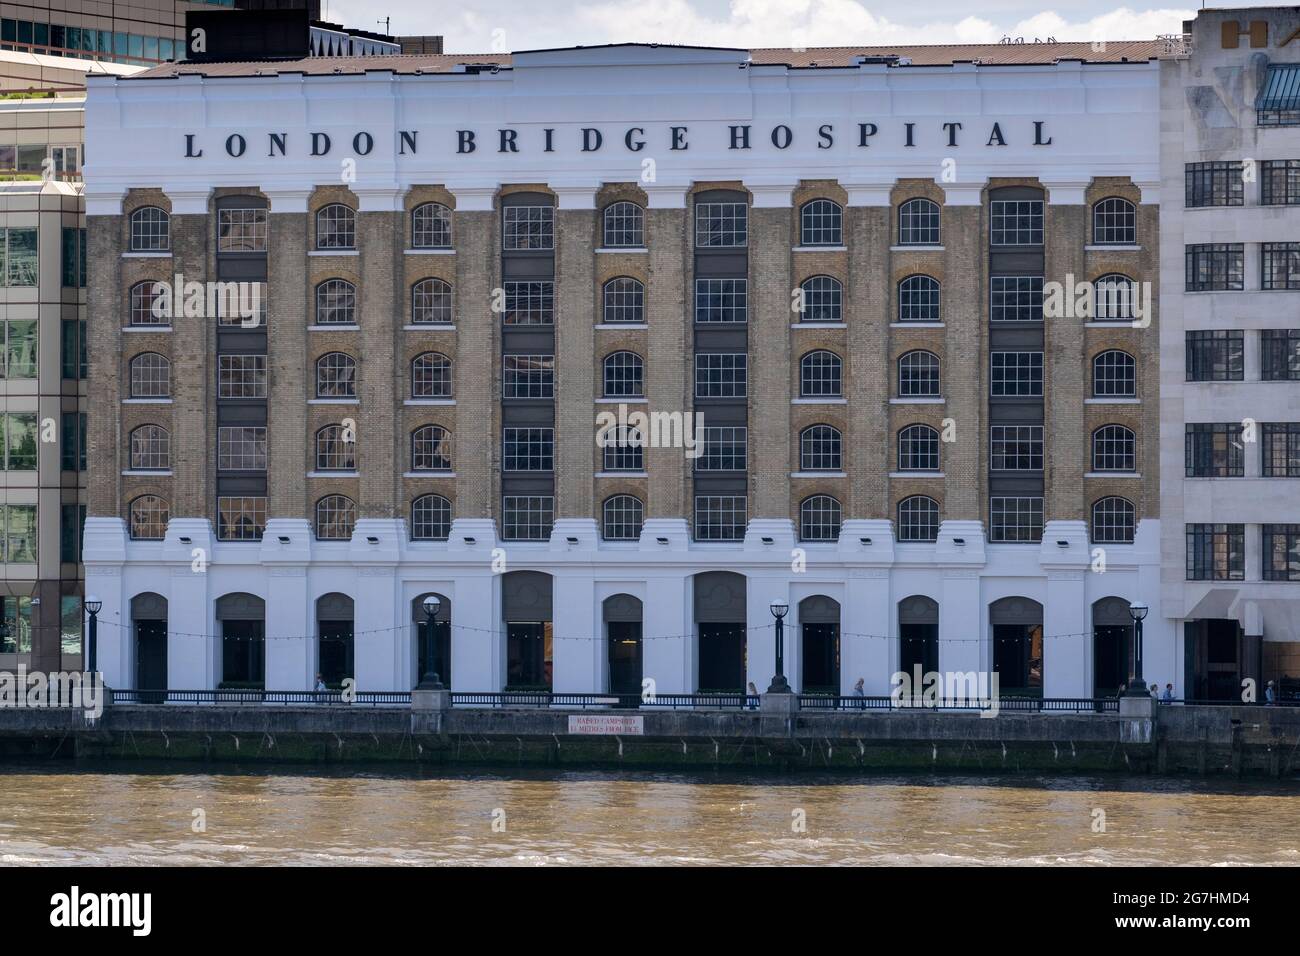 Frente a la orilla sur del río del London Bridge Hospital anteriormente Chamberlains Wharf (1861), adquirido en 1983 como una extensión del hospital existente. Foto de stock